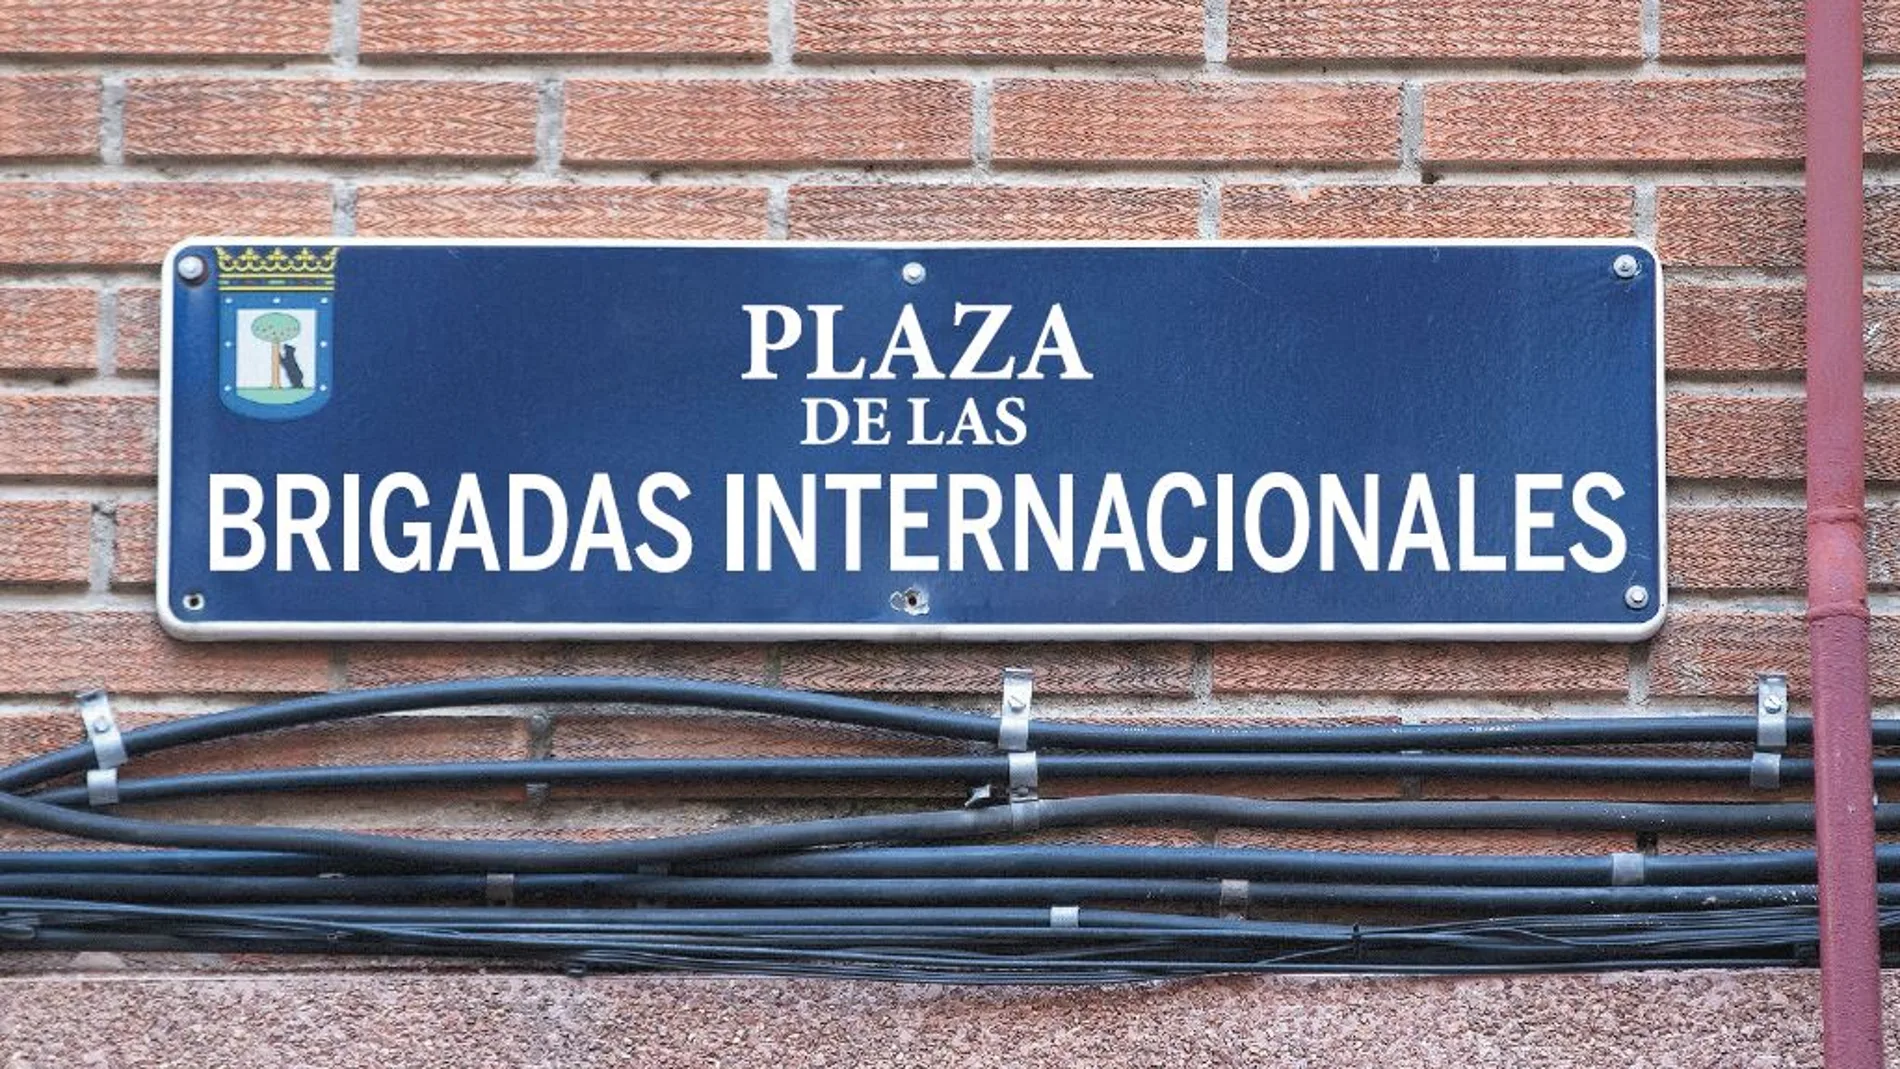 Recreación de la futura plaza que estará situada frente a la Universidad Rey Juan Carlos, donde se estableció la primera brigada que llegó a Madrid en la Guerra Civil